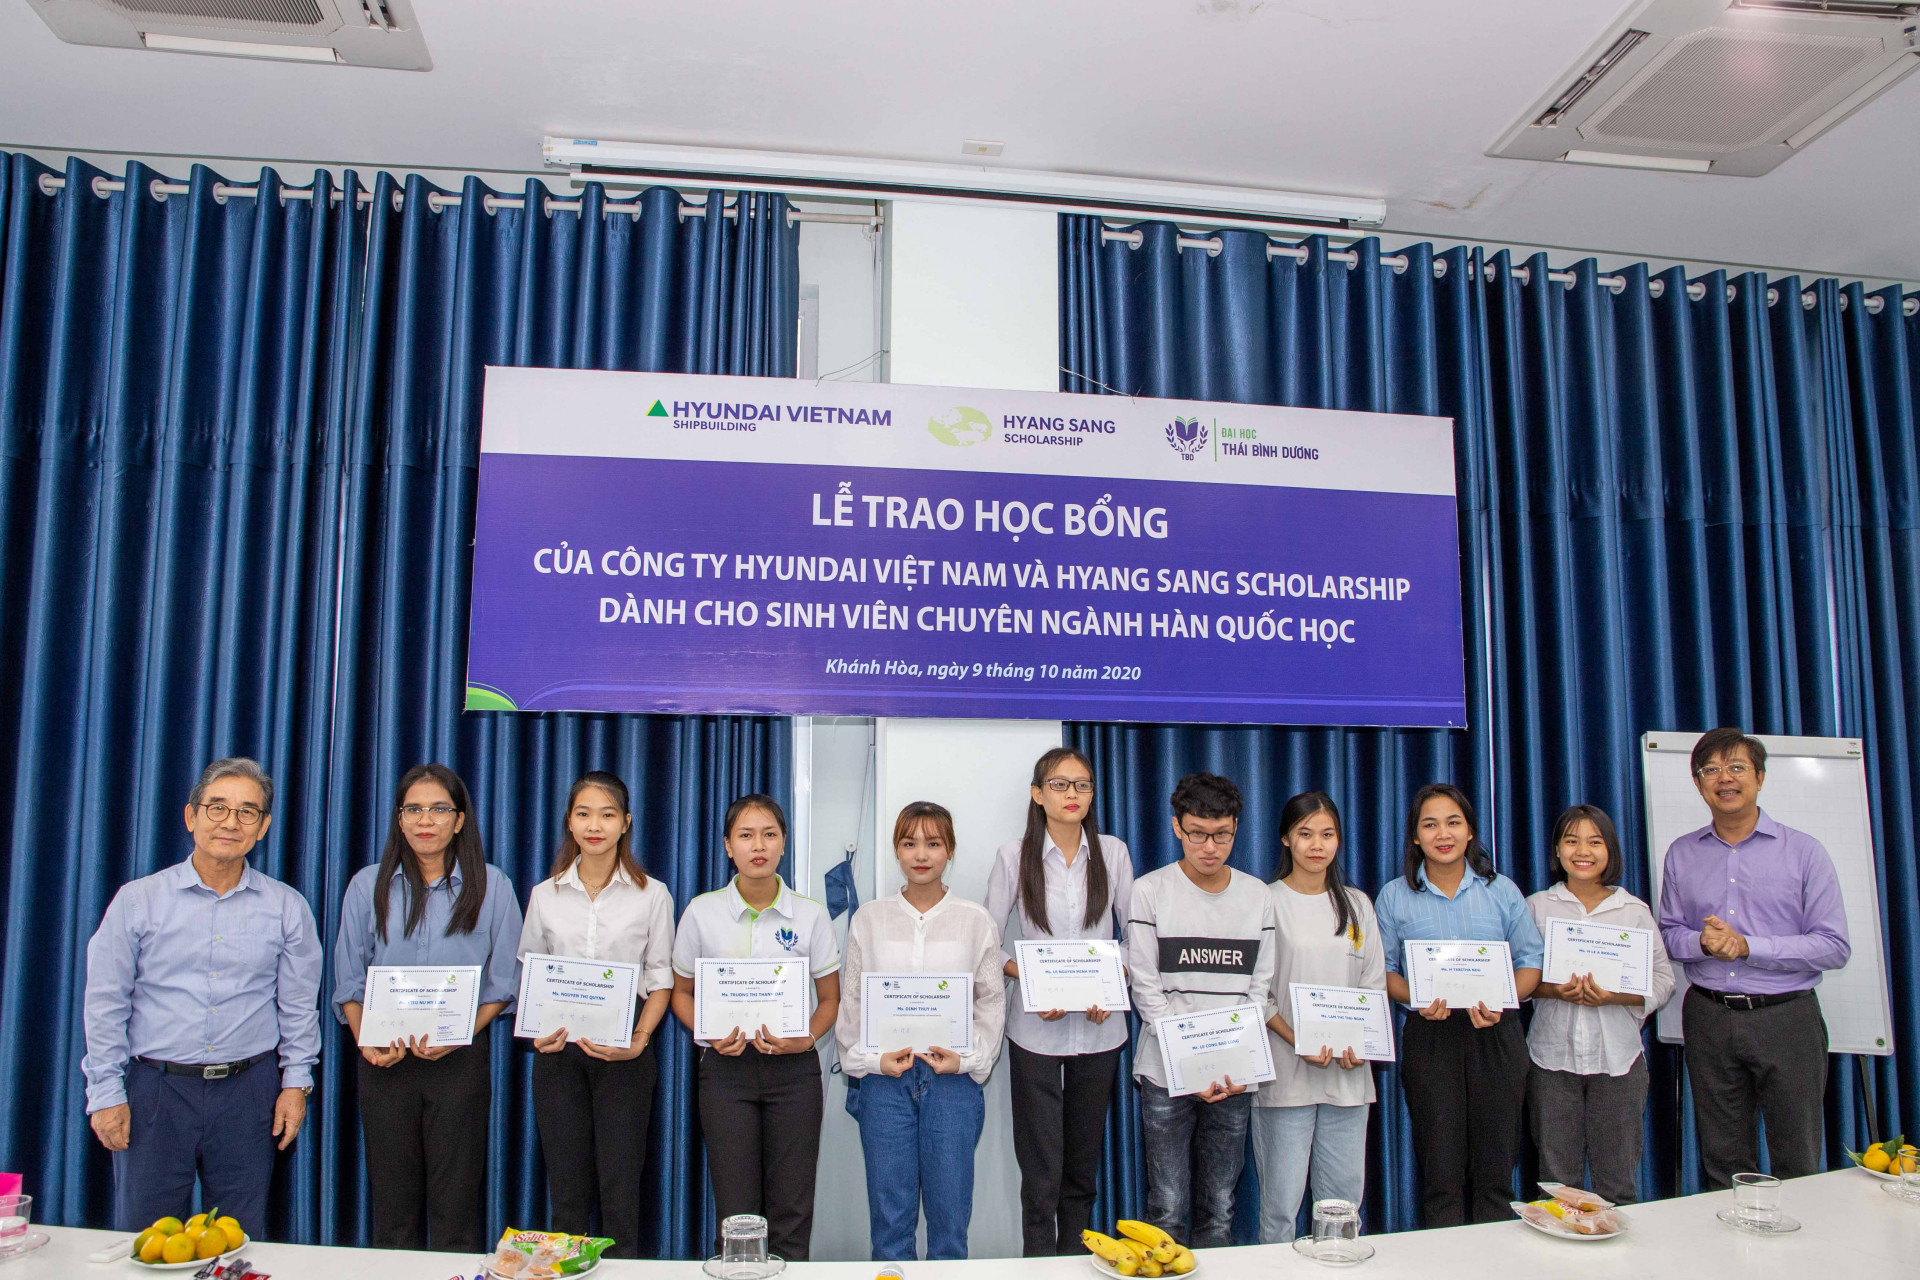 Nhiều tổ chức, doanh nghiệp hỗ trợ trao học bổng dành cho sinh viên Đại học Thái Bình Dương (Trong hình: Trao học bổng Hyang Sang Scholarship cho sinh viên ngành Hàn Quốc)